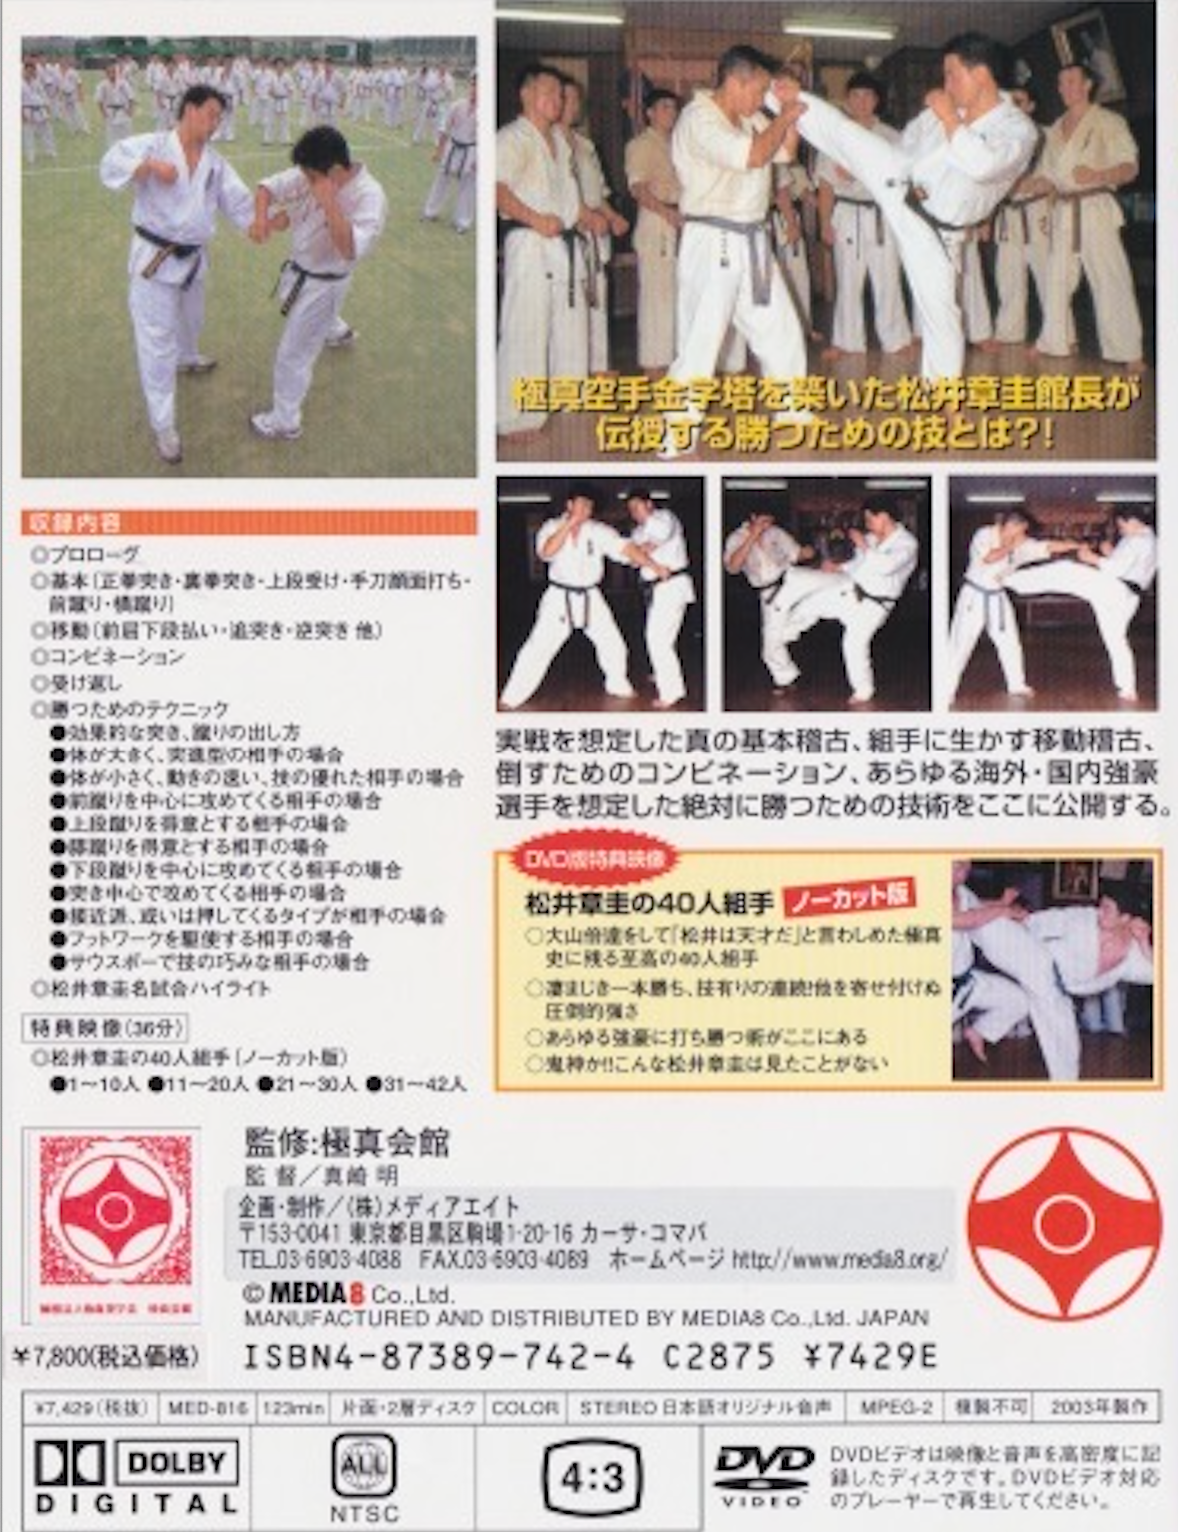 DVD de introducción al Kyokushin Kumite de Shokei Matsui.